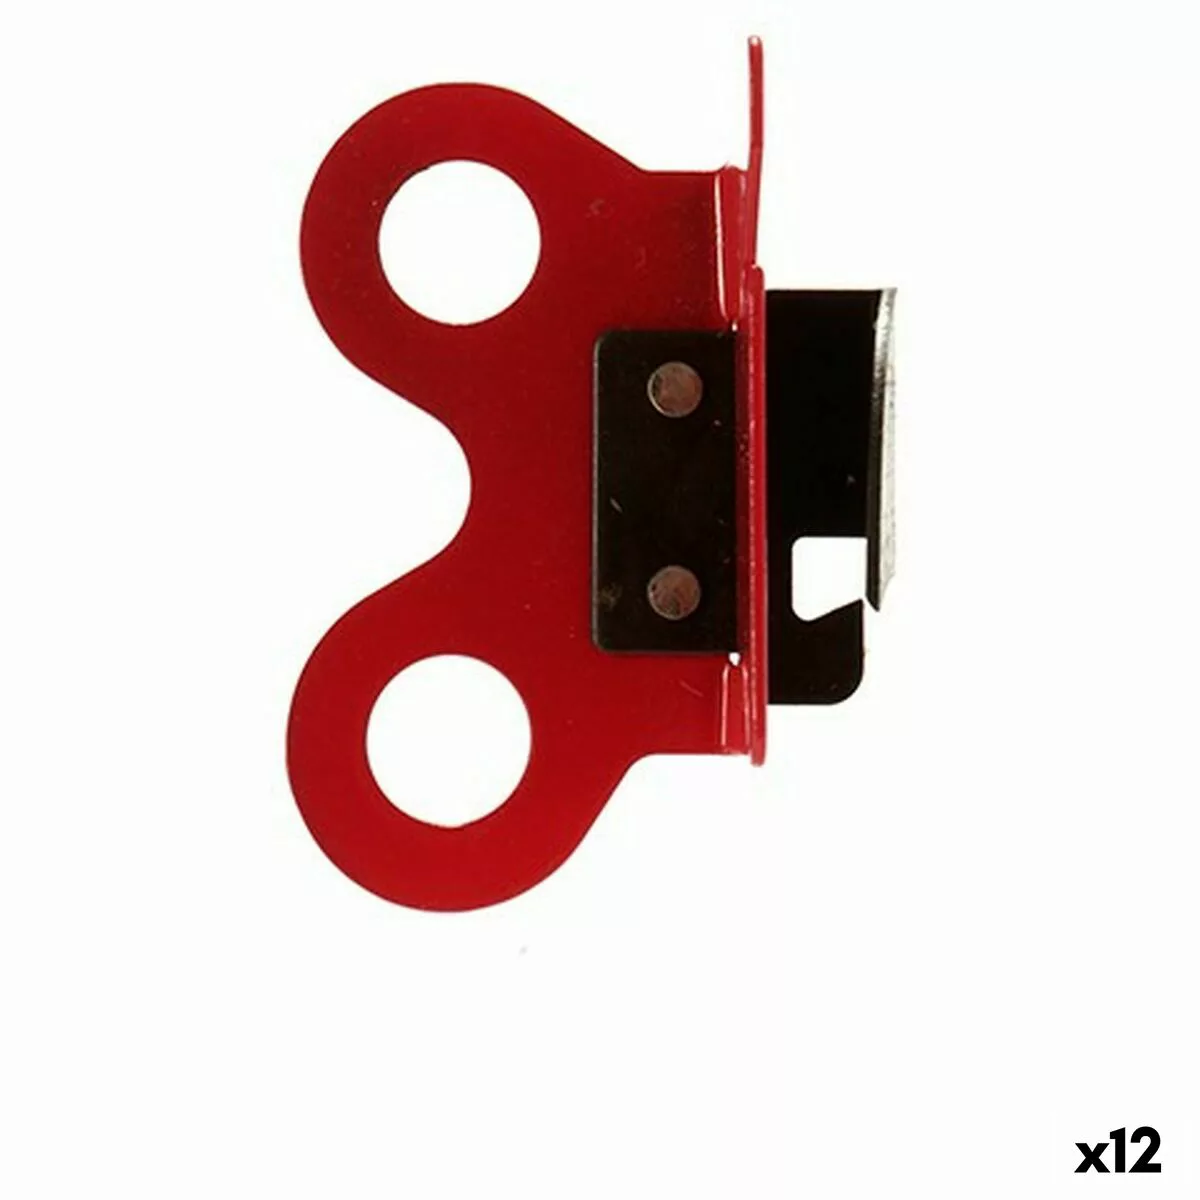 Dosenöffner Rot Schwarz Stahl (5 X 6,7 X 2,5 Cm) (12 Stück) günstig online kaufen